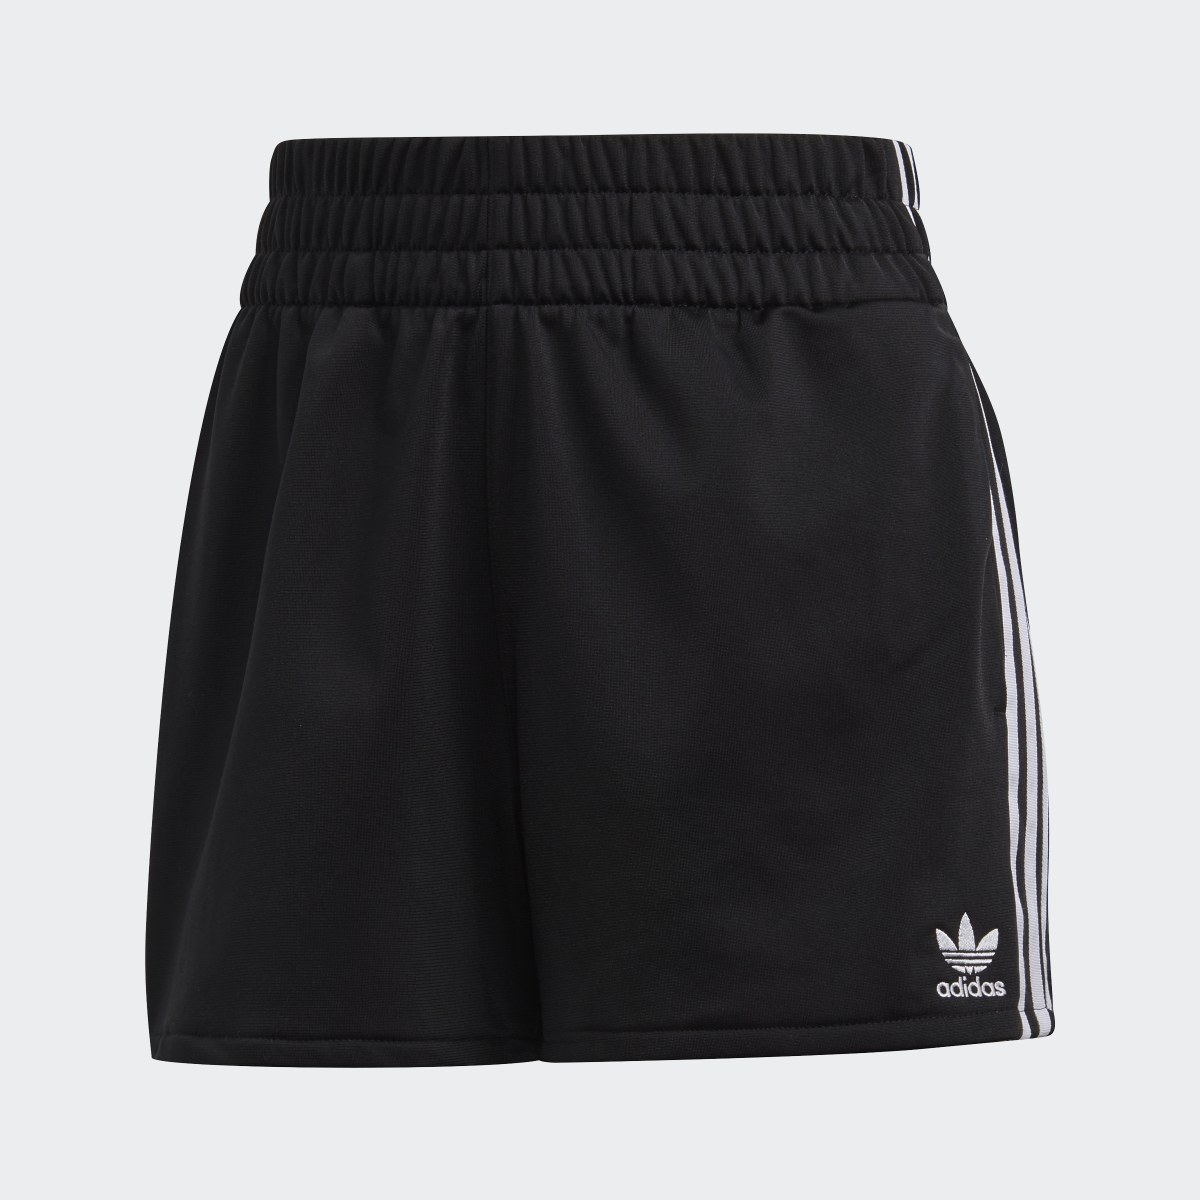 Adidas Shorts 3 Franjas. 4